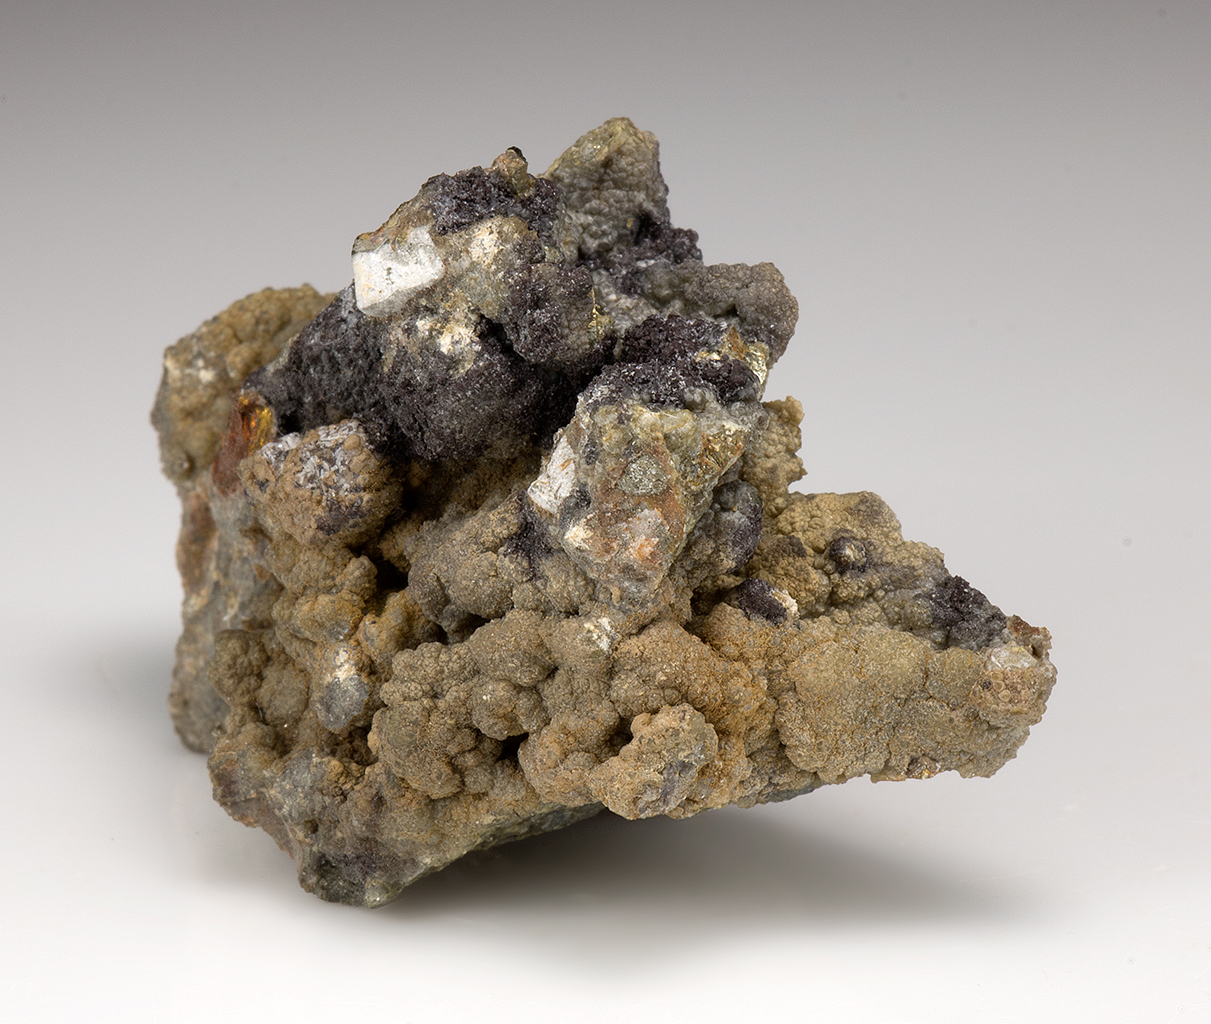 selenium-minerals-for-sale-2052282